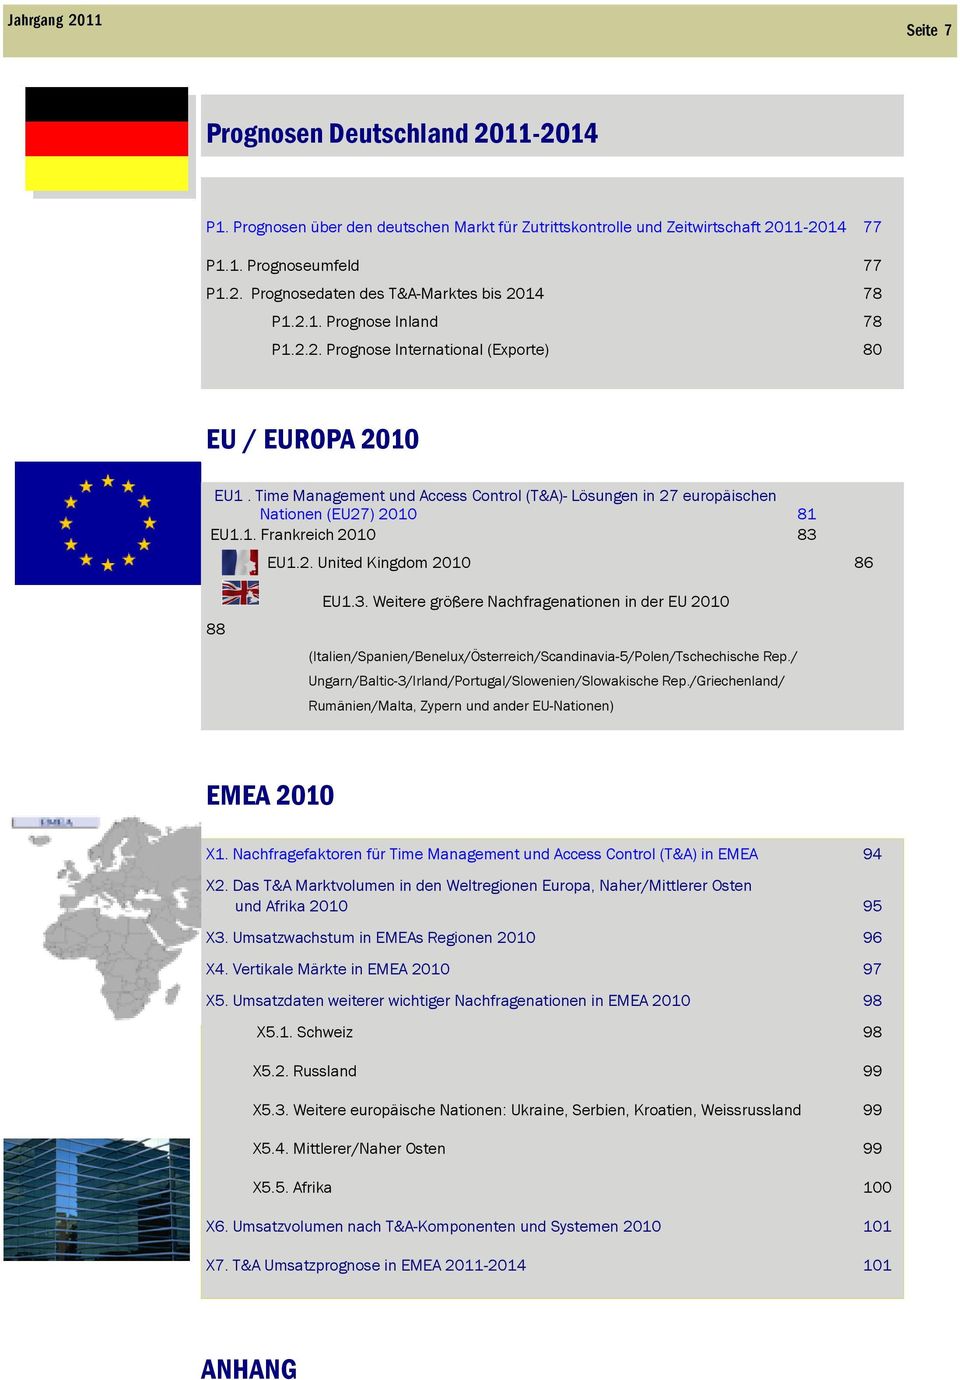 2. United Kingdom 2010 86 88 EU1.3. Weitere größere Nachfragenationen in der EU 2010 (Italien/Spanien/Benelux/Österreich/Scandinavia-5/Polen/Tschechische Rep.